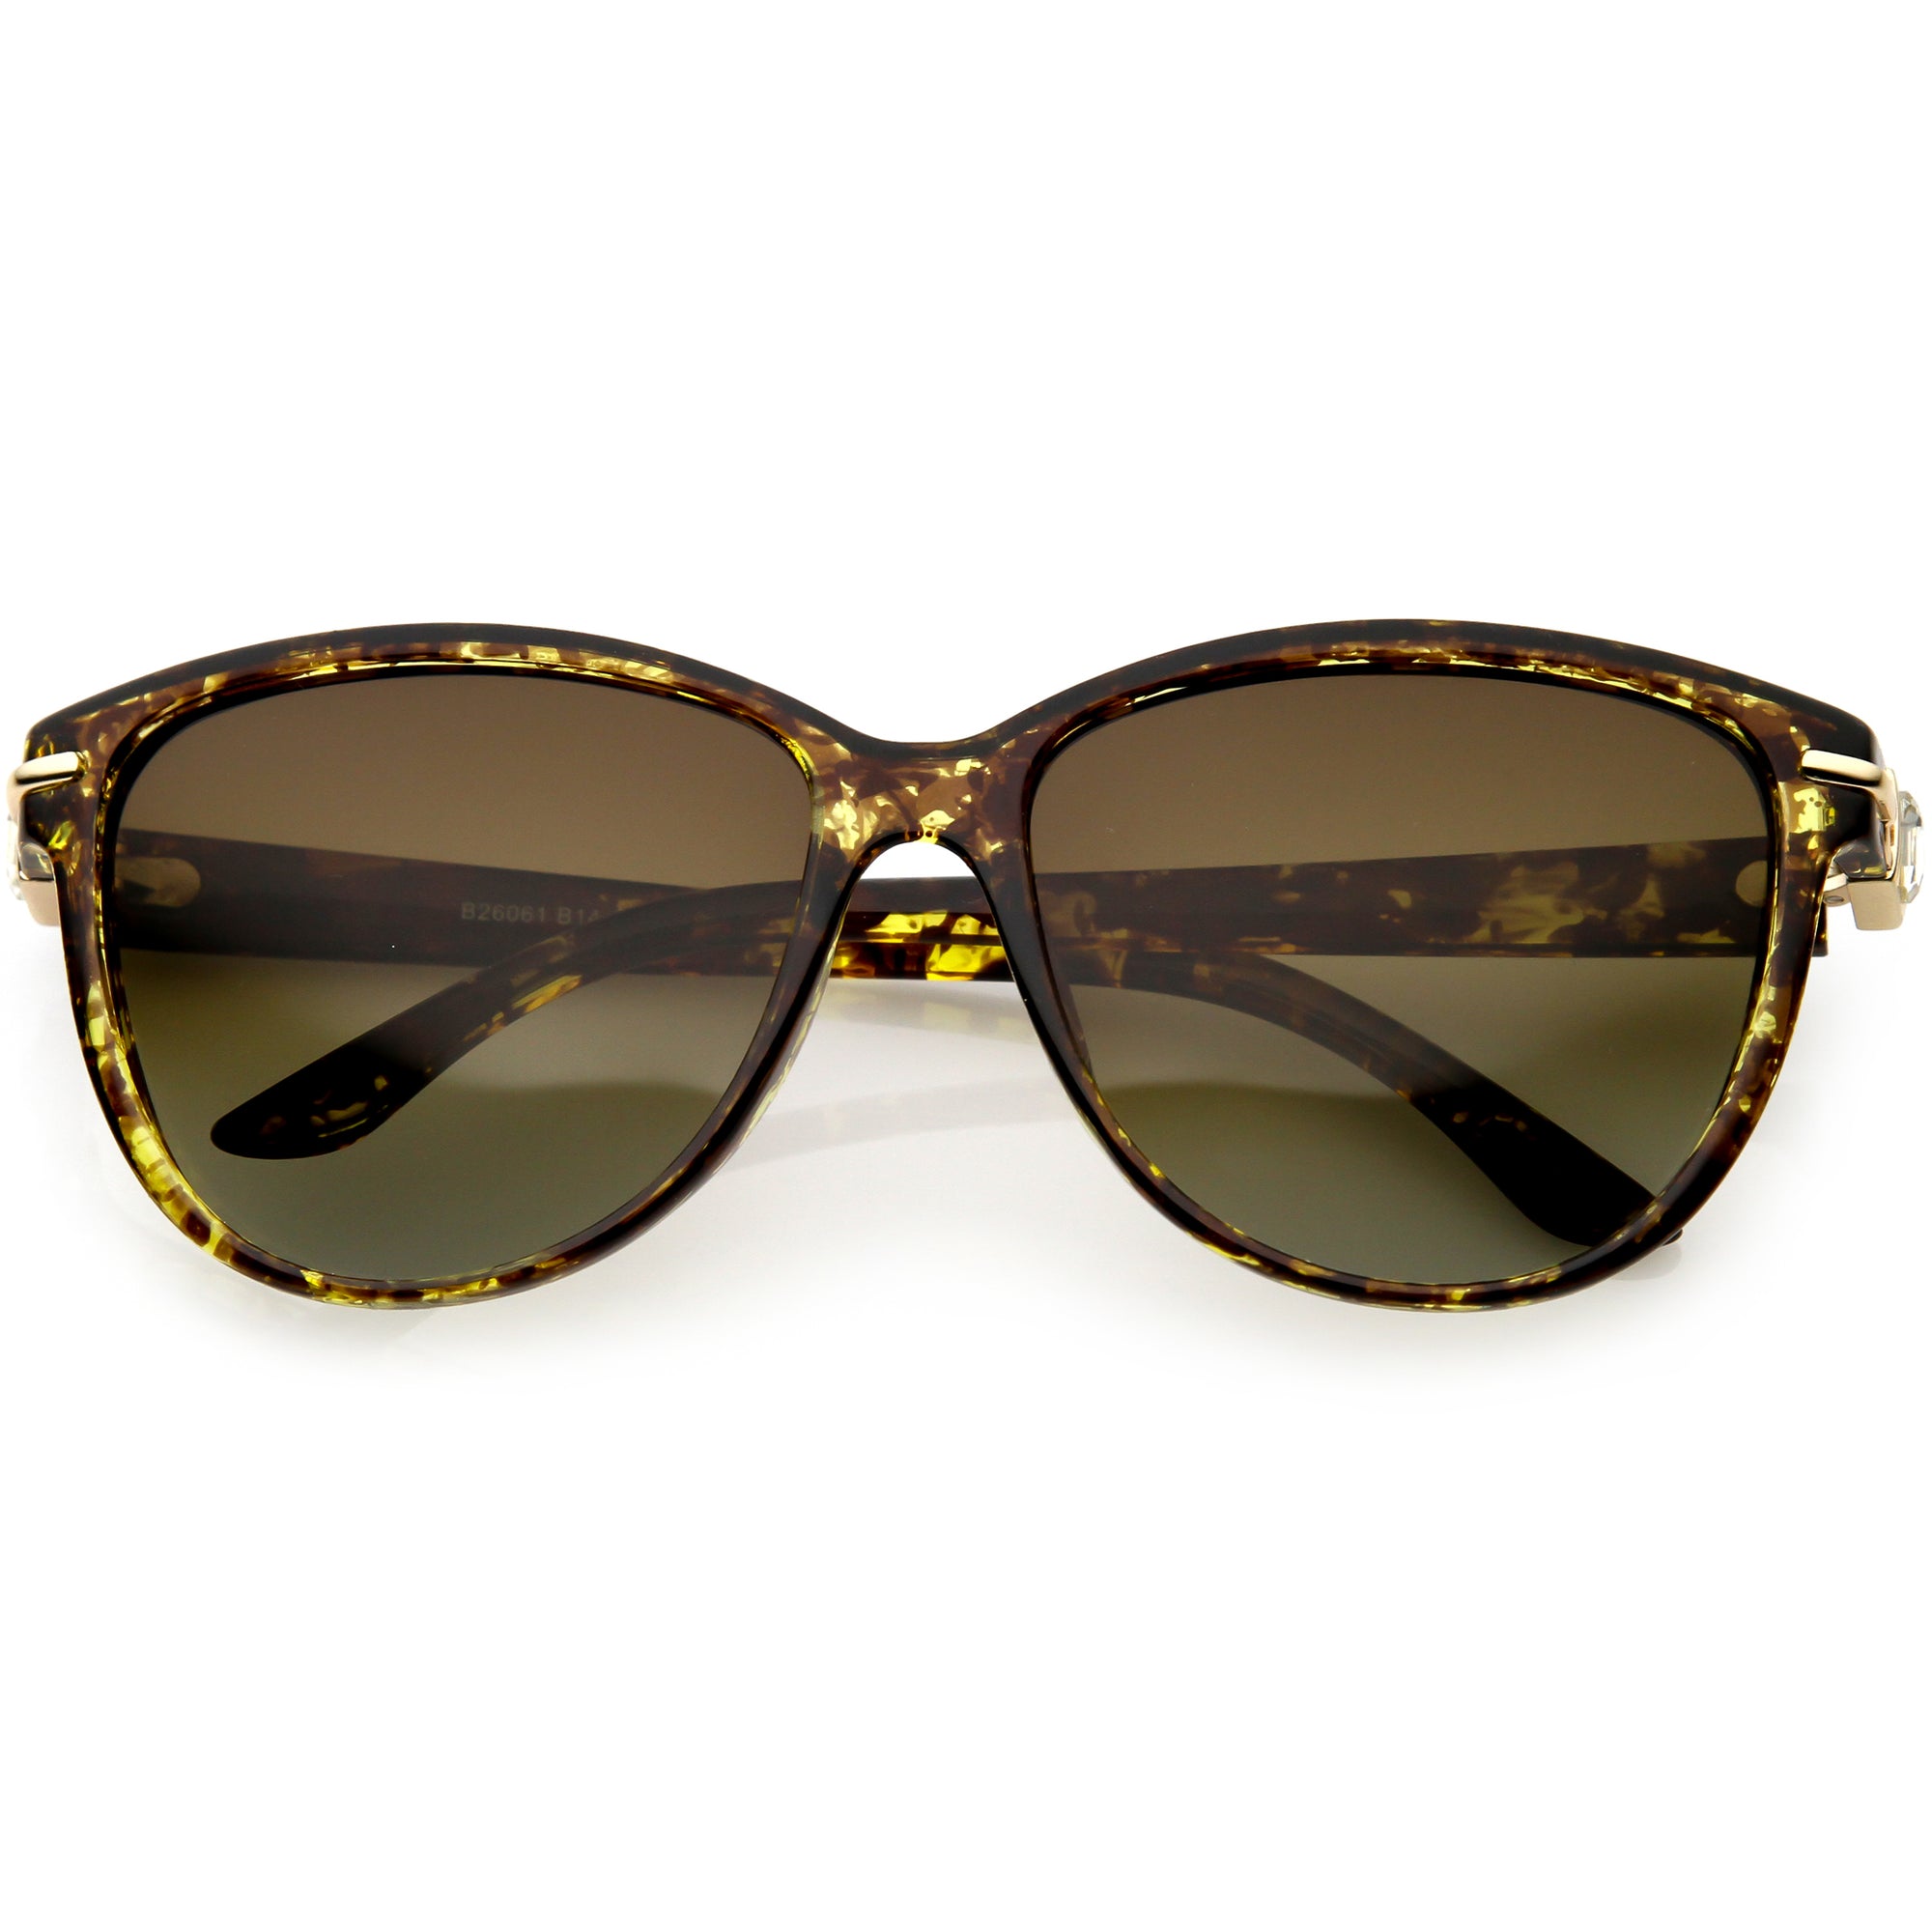 Rhinestone Accented Oversize Cat Eye Sunglasses Polarized Lens C901